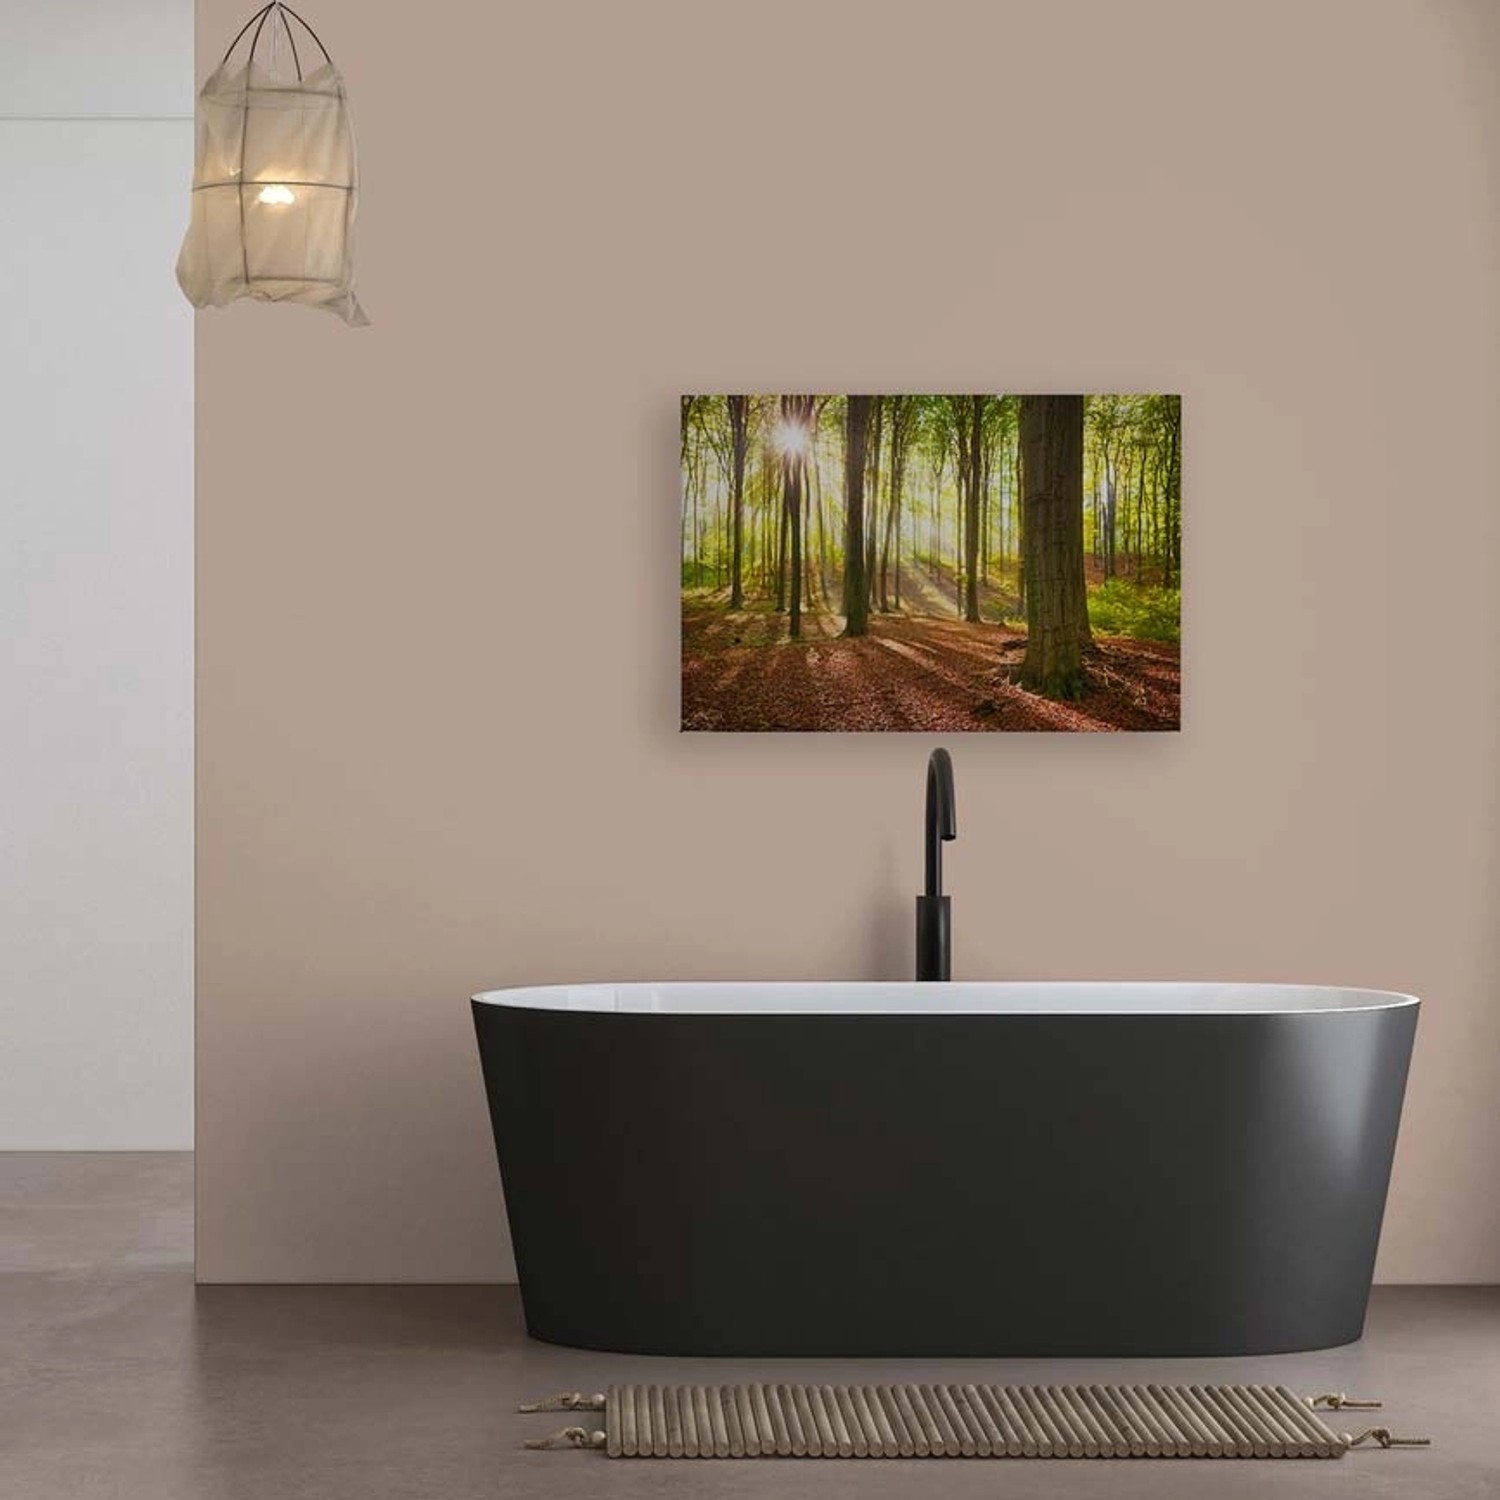 Bricoflor Wald Bild Auf Leinwand In 120 X 80 Cm Herbstwald Leinwandbild In Grün Mit Sonne Ideal Für Schlafzimmer Und Bür